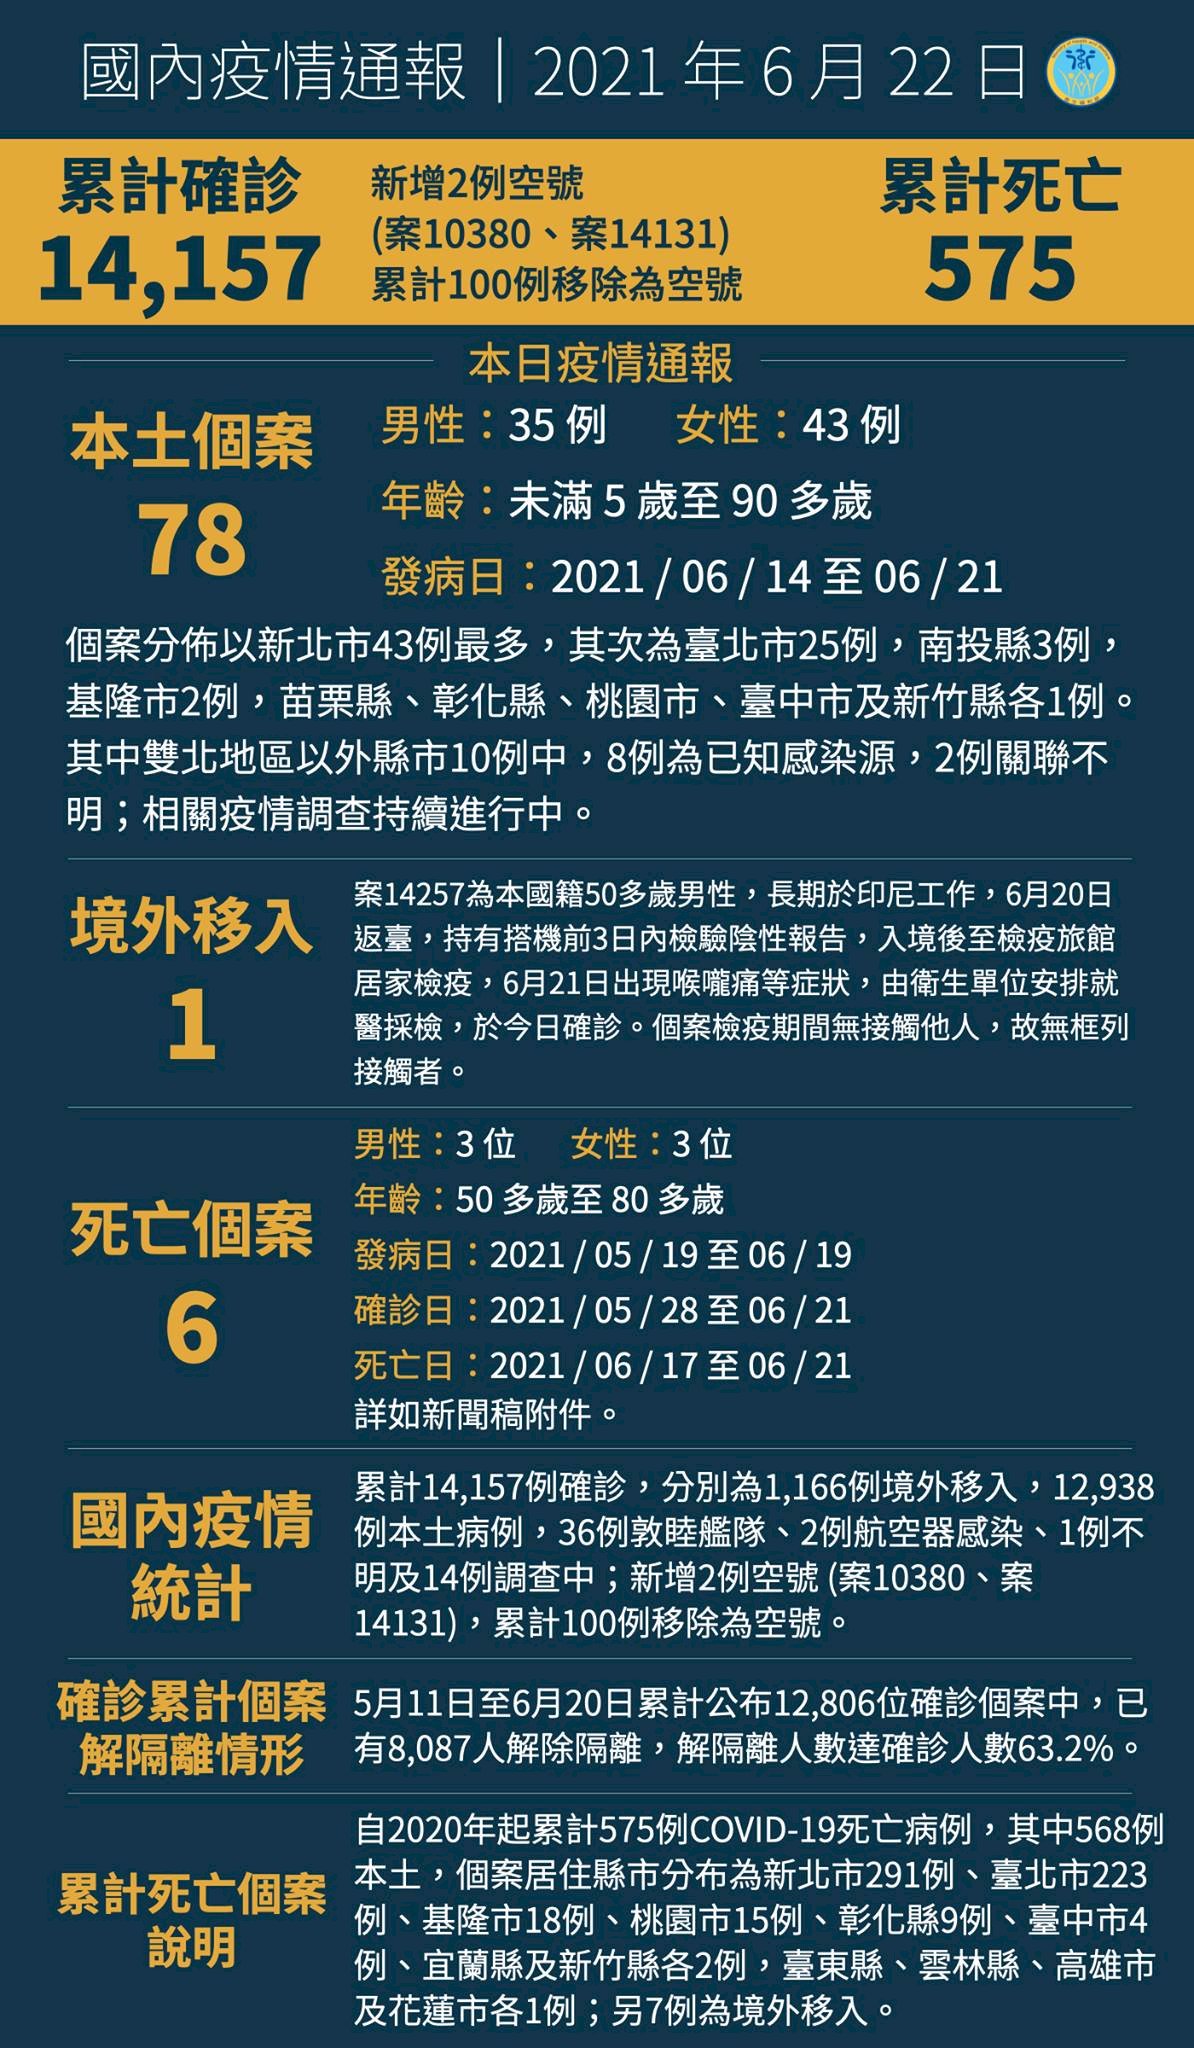 6월22일 기준 코로나 19 신규 사망 6명 추가, 누적 확진자14,157명